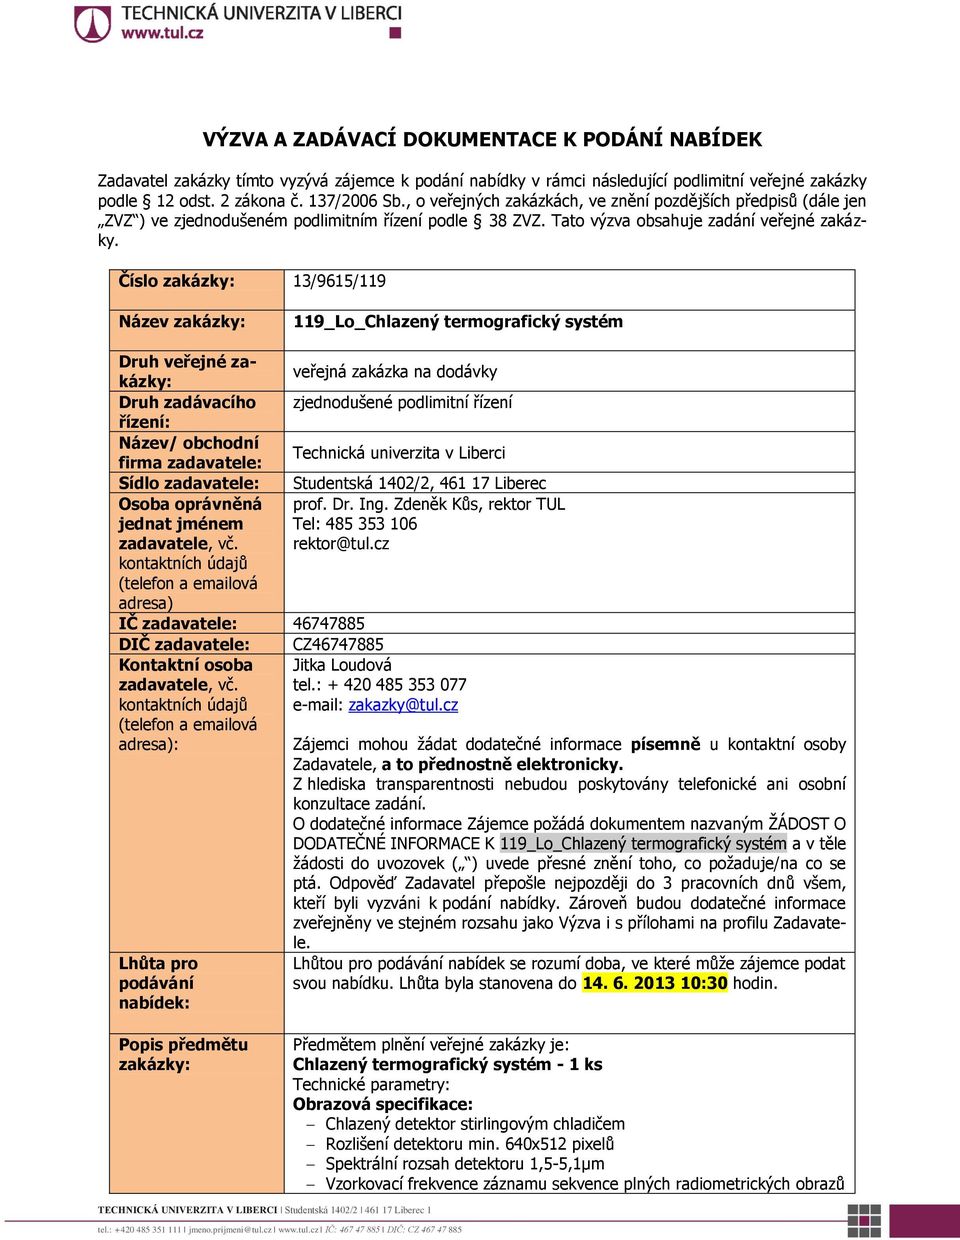 Číslo zakázky: 13/9615/119 Název zakázky: 119_Lo_Chlazený termografický systém Druh veřejné zakázky: veřejná zakázka na dodávky Druh zadávacího zjednodušené podlimitní řízení řízení: Název/ obchodní